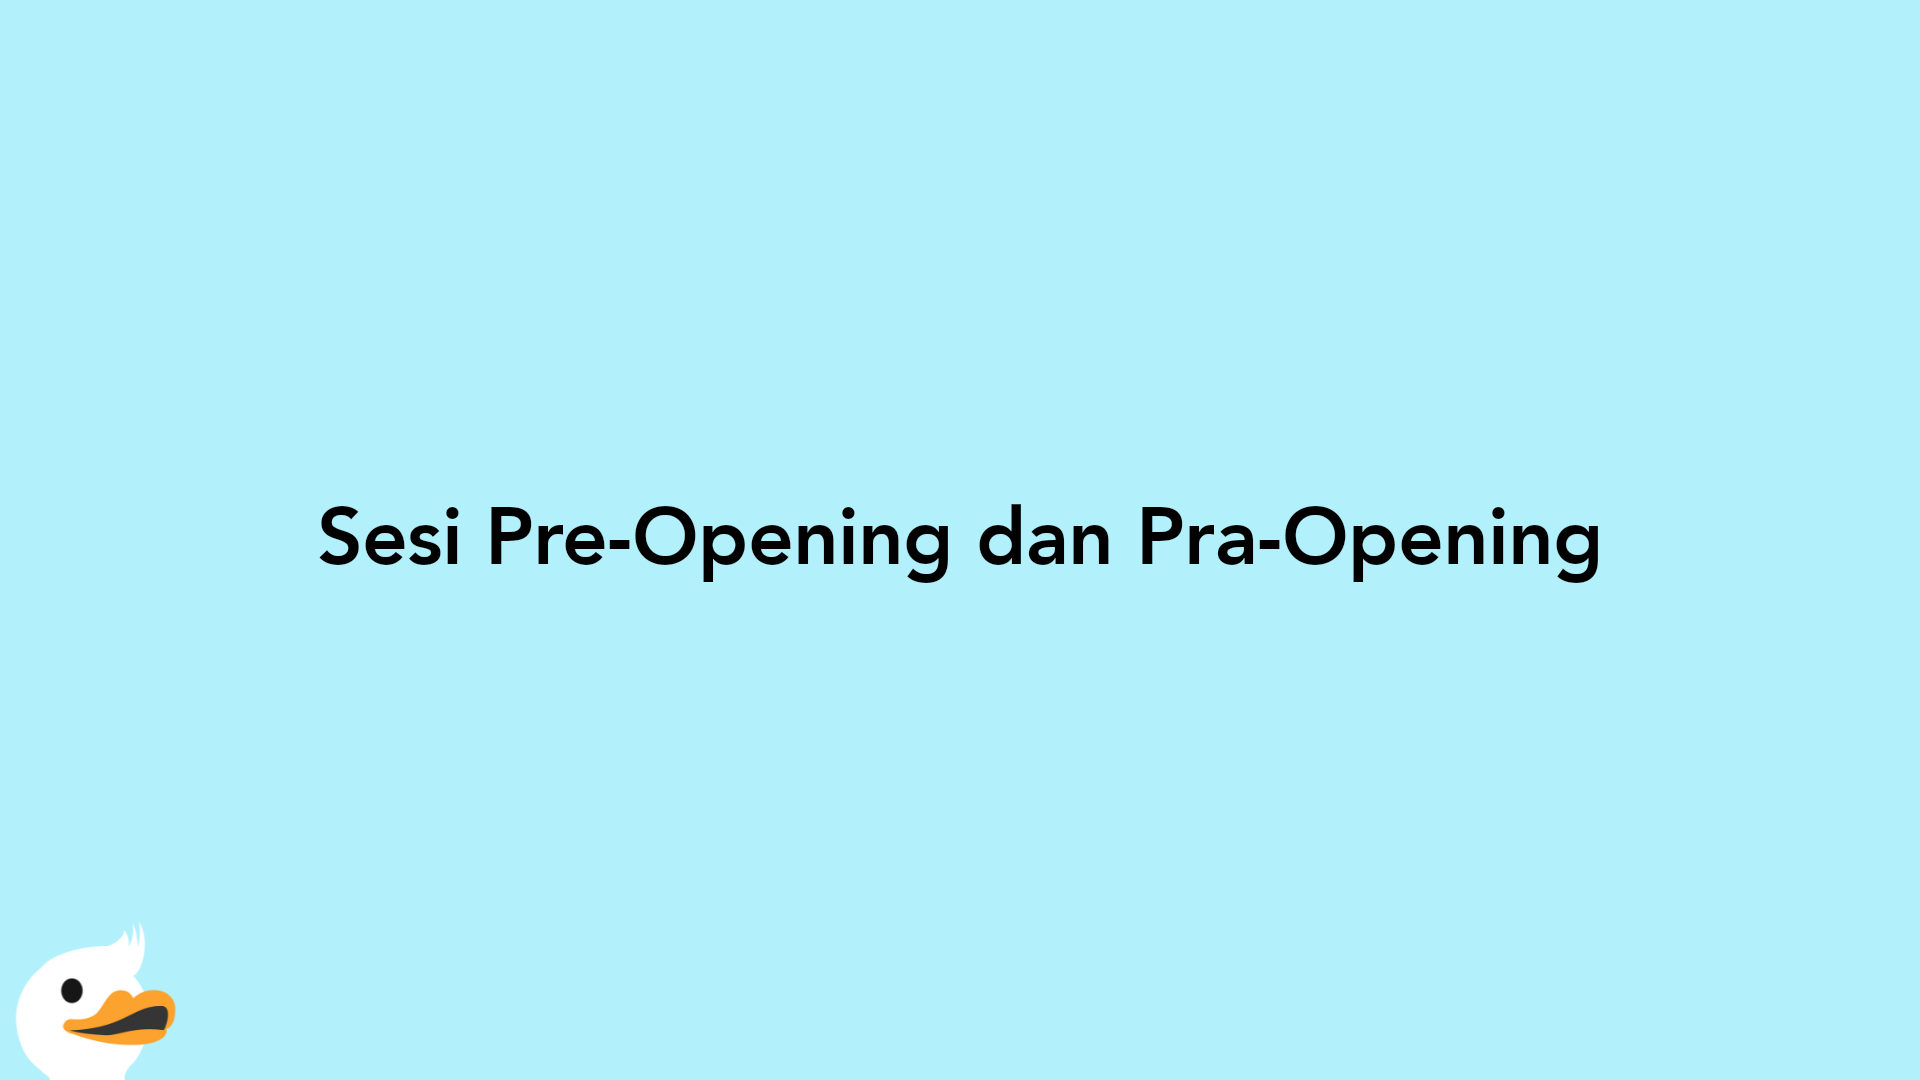 Sesi Pre-Opening dan Pra-Opening